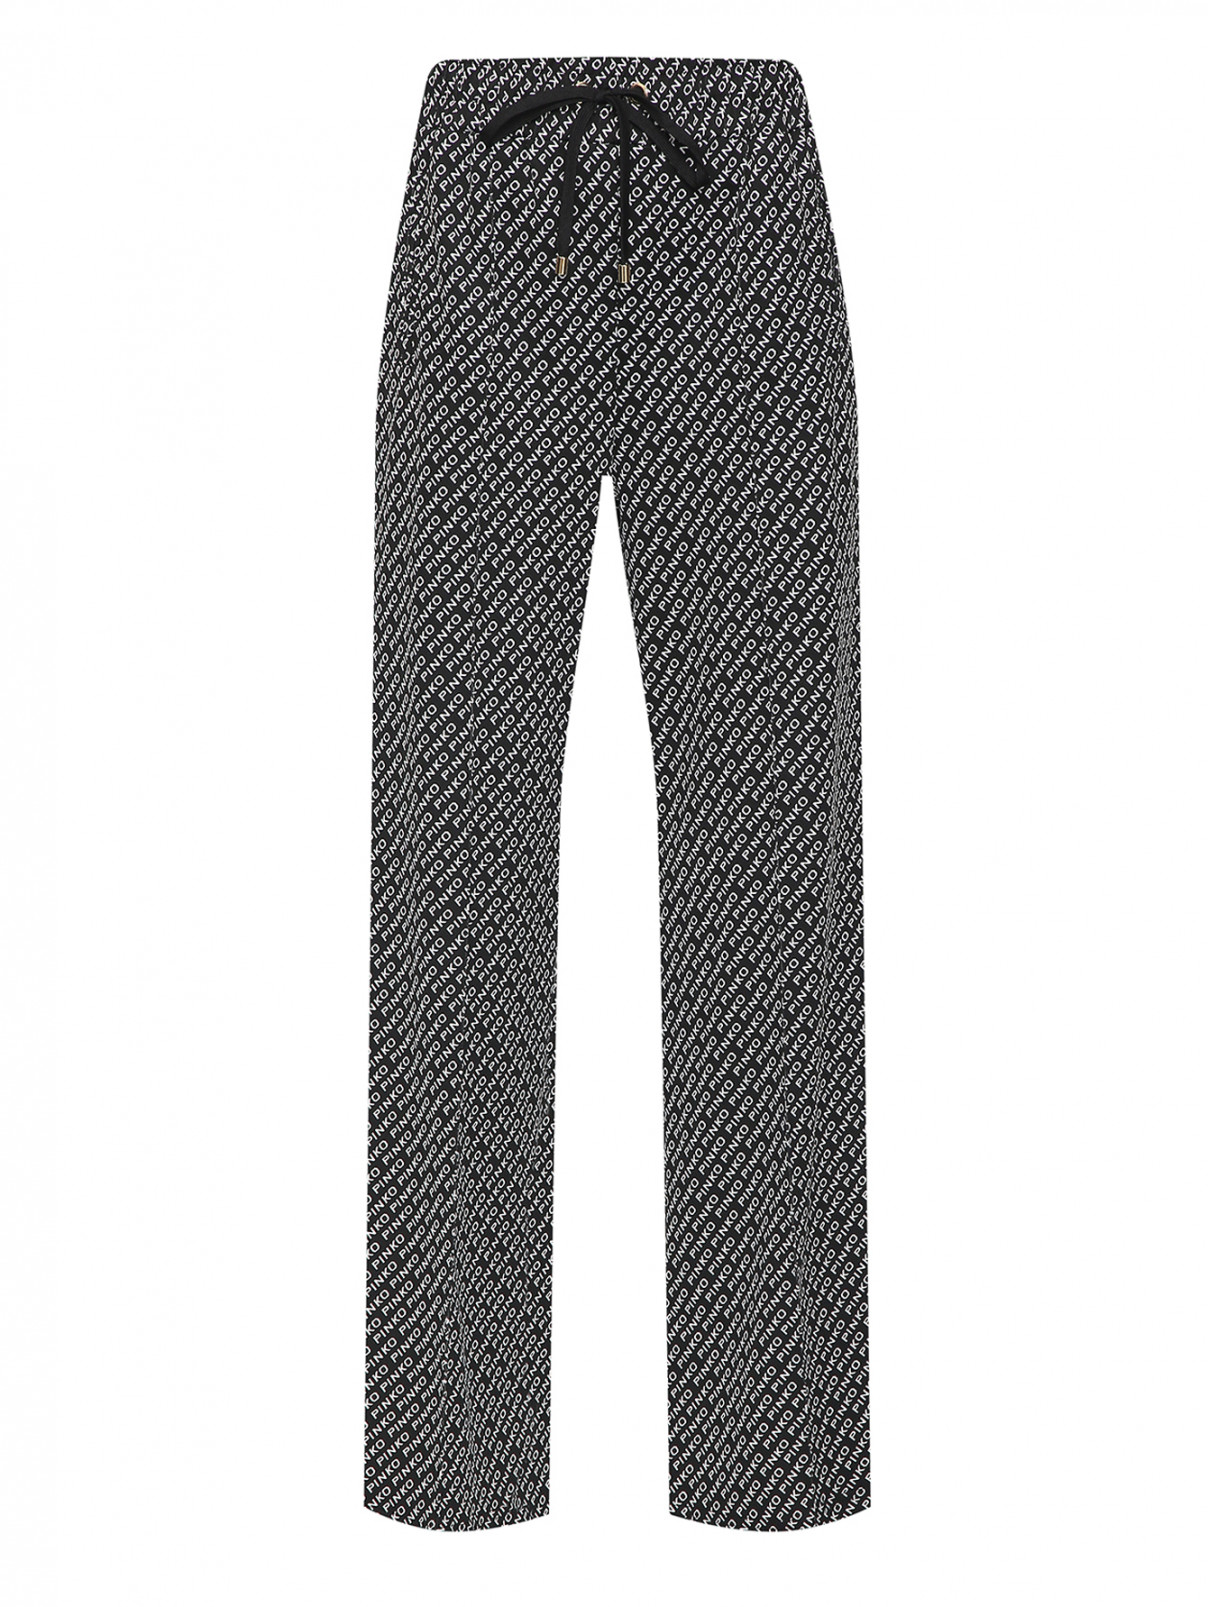 Трикотажные брюки на резинке в монограмму PINKO  –  Общий вид  – Цвет:  Черный